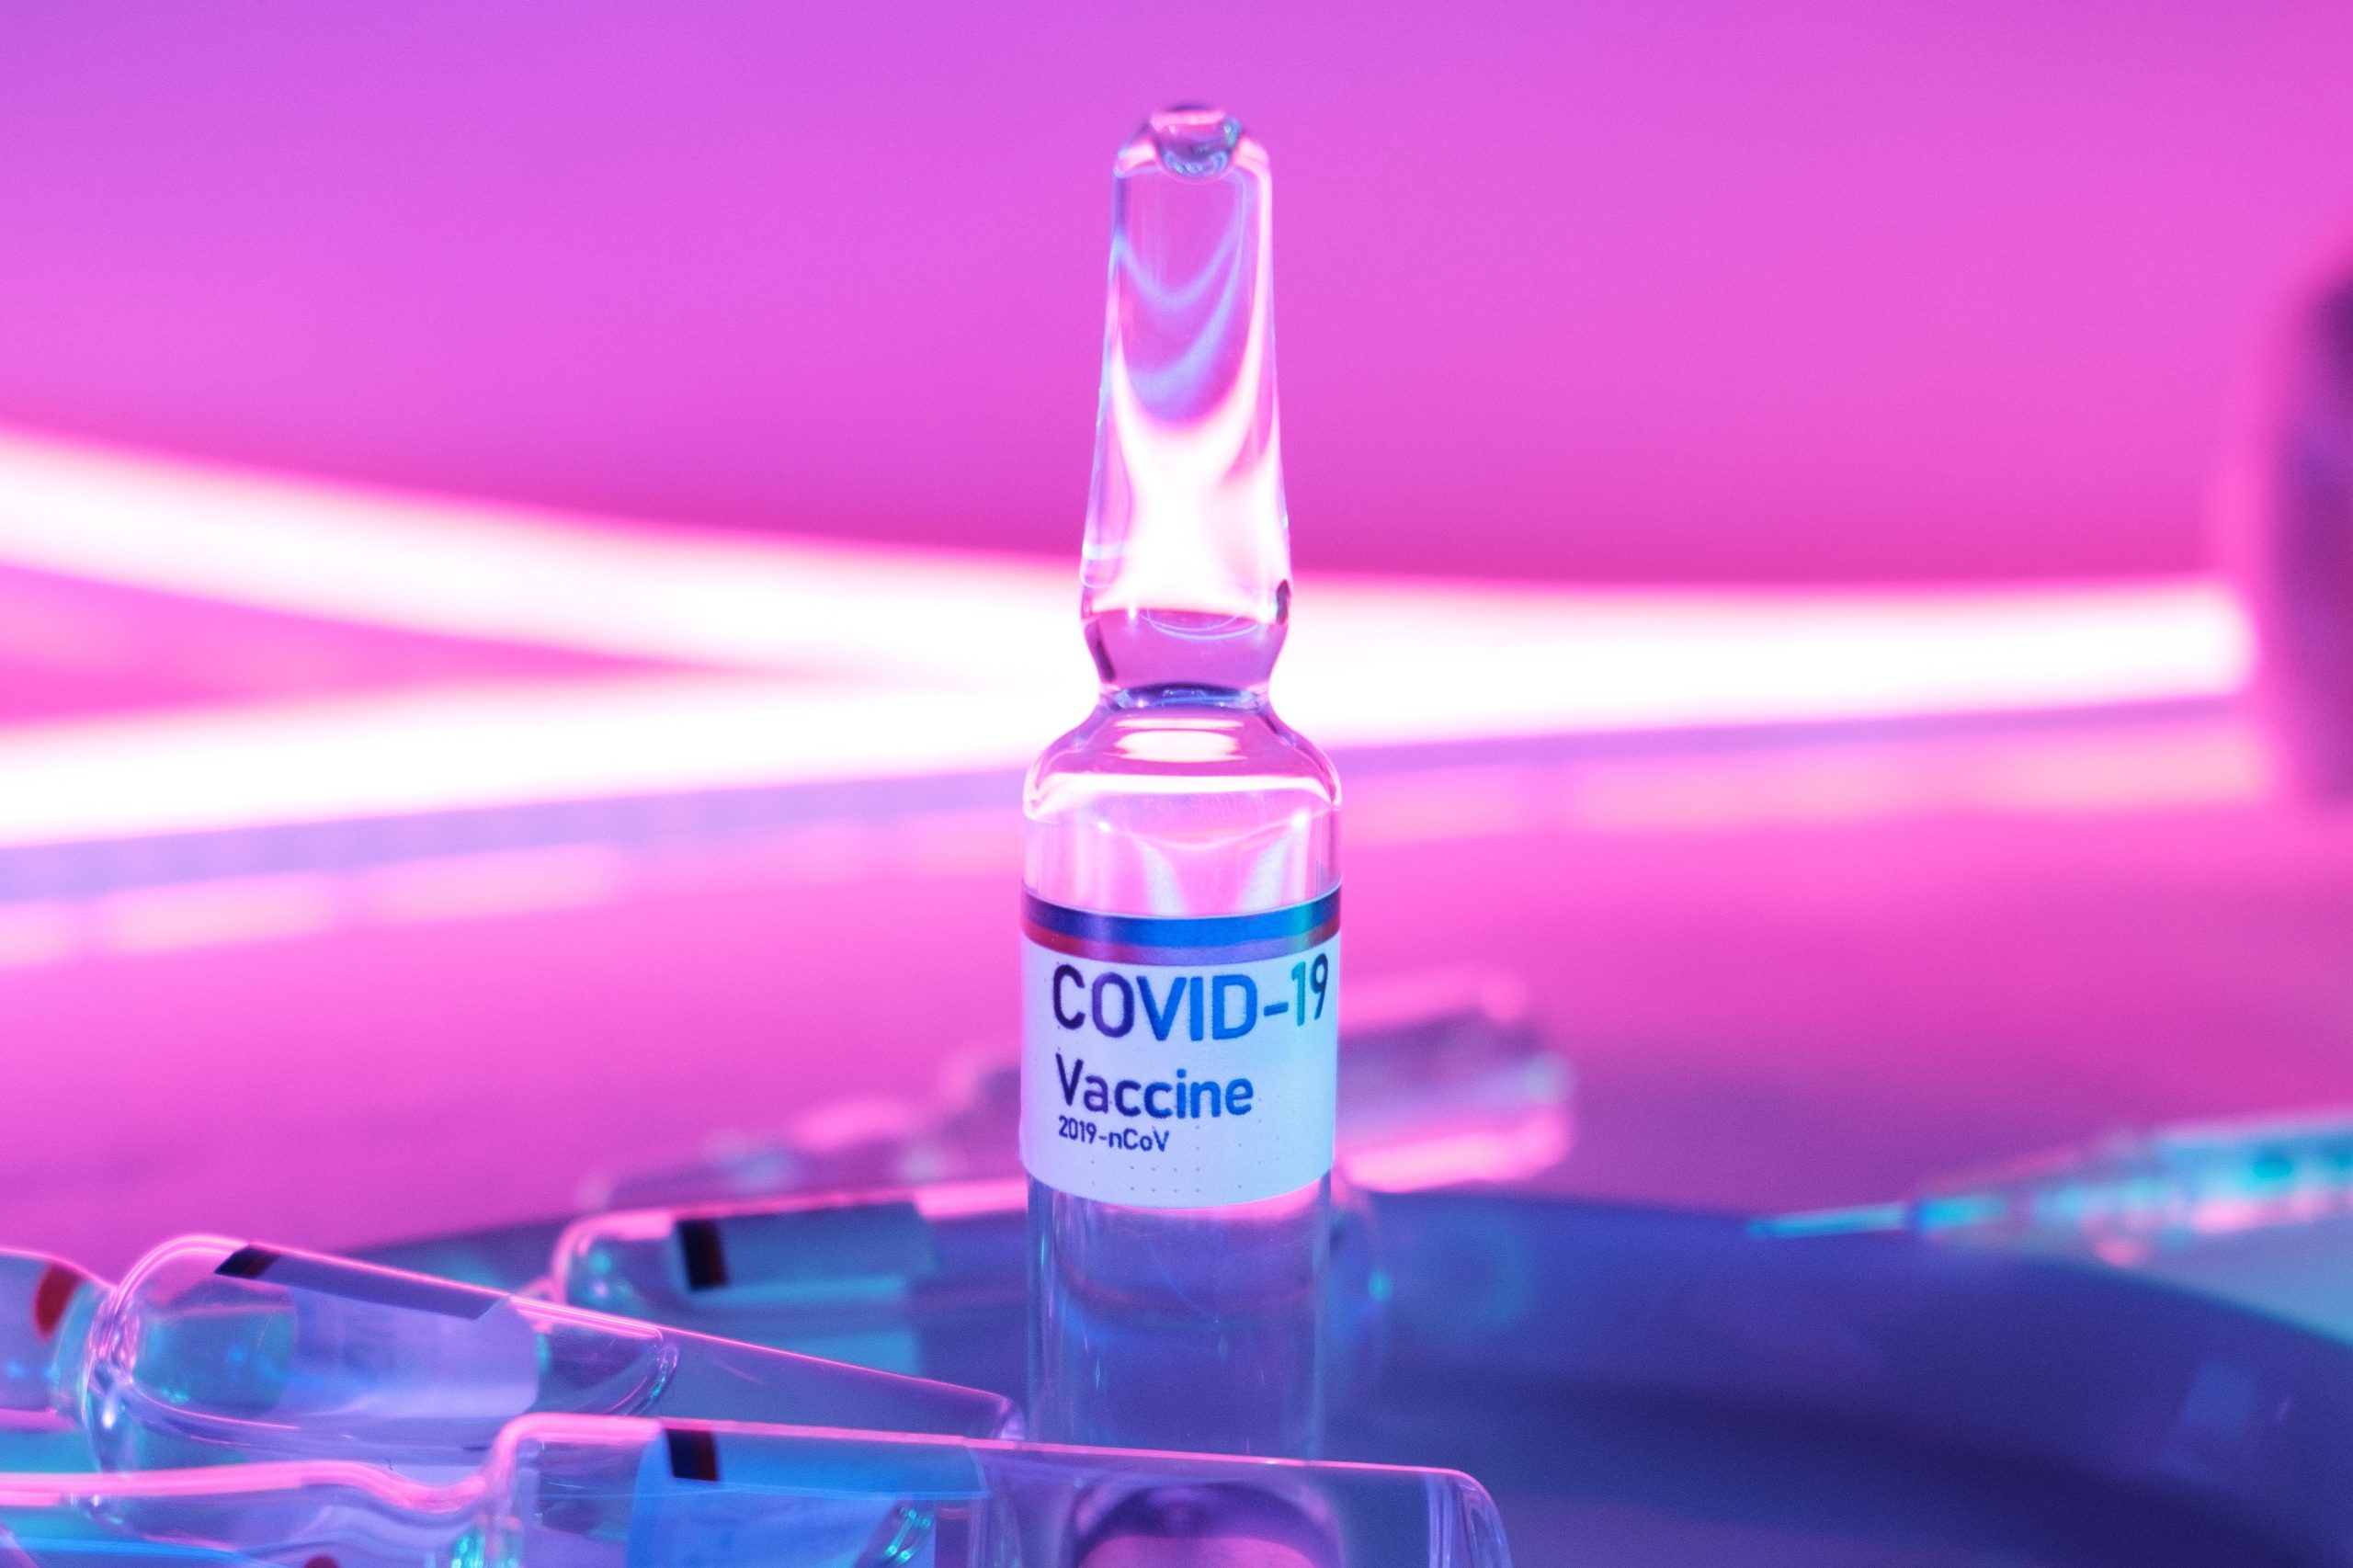 3 признака того, что вакцина от COVID-19 после укола сработала